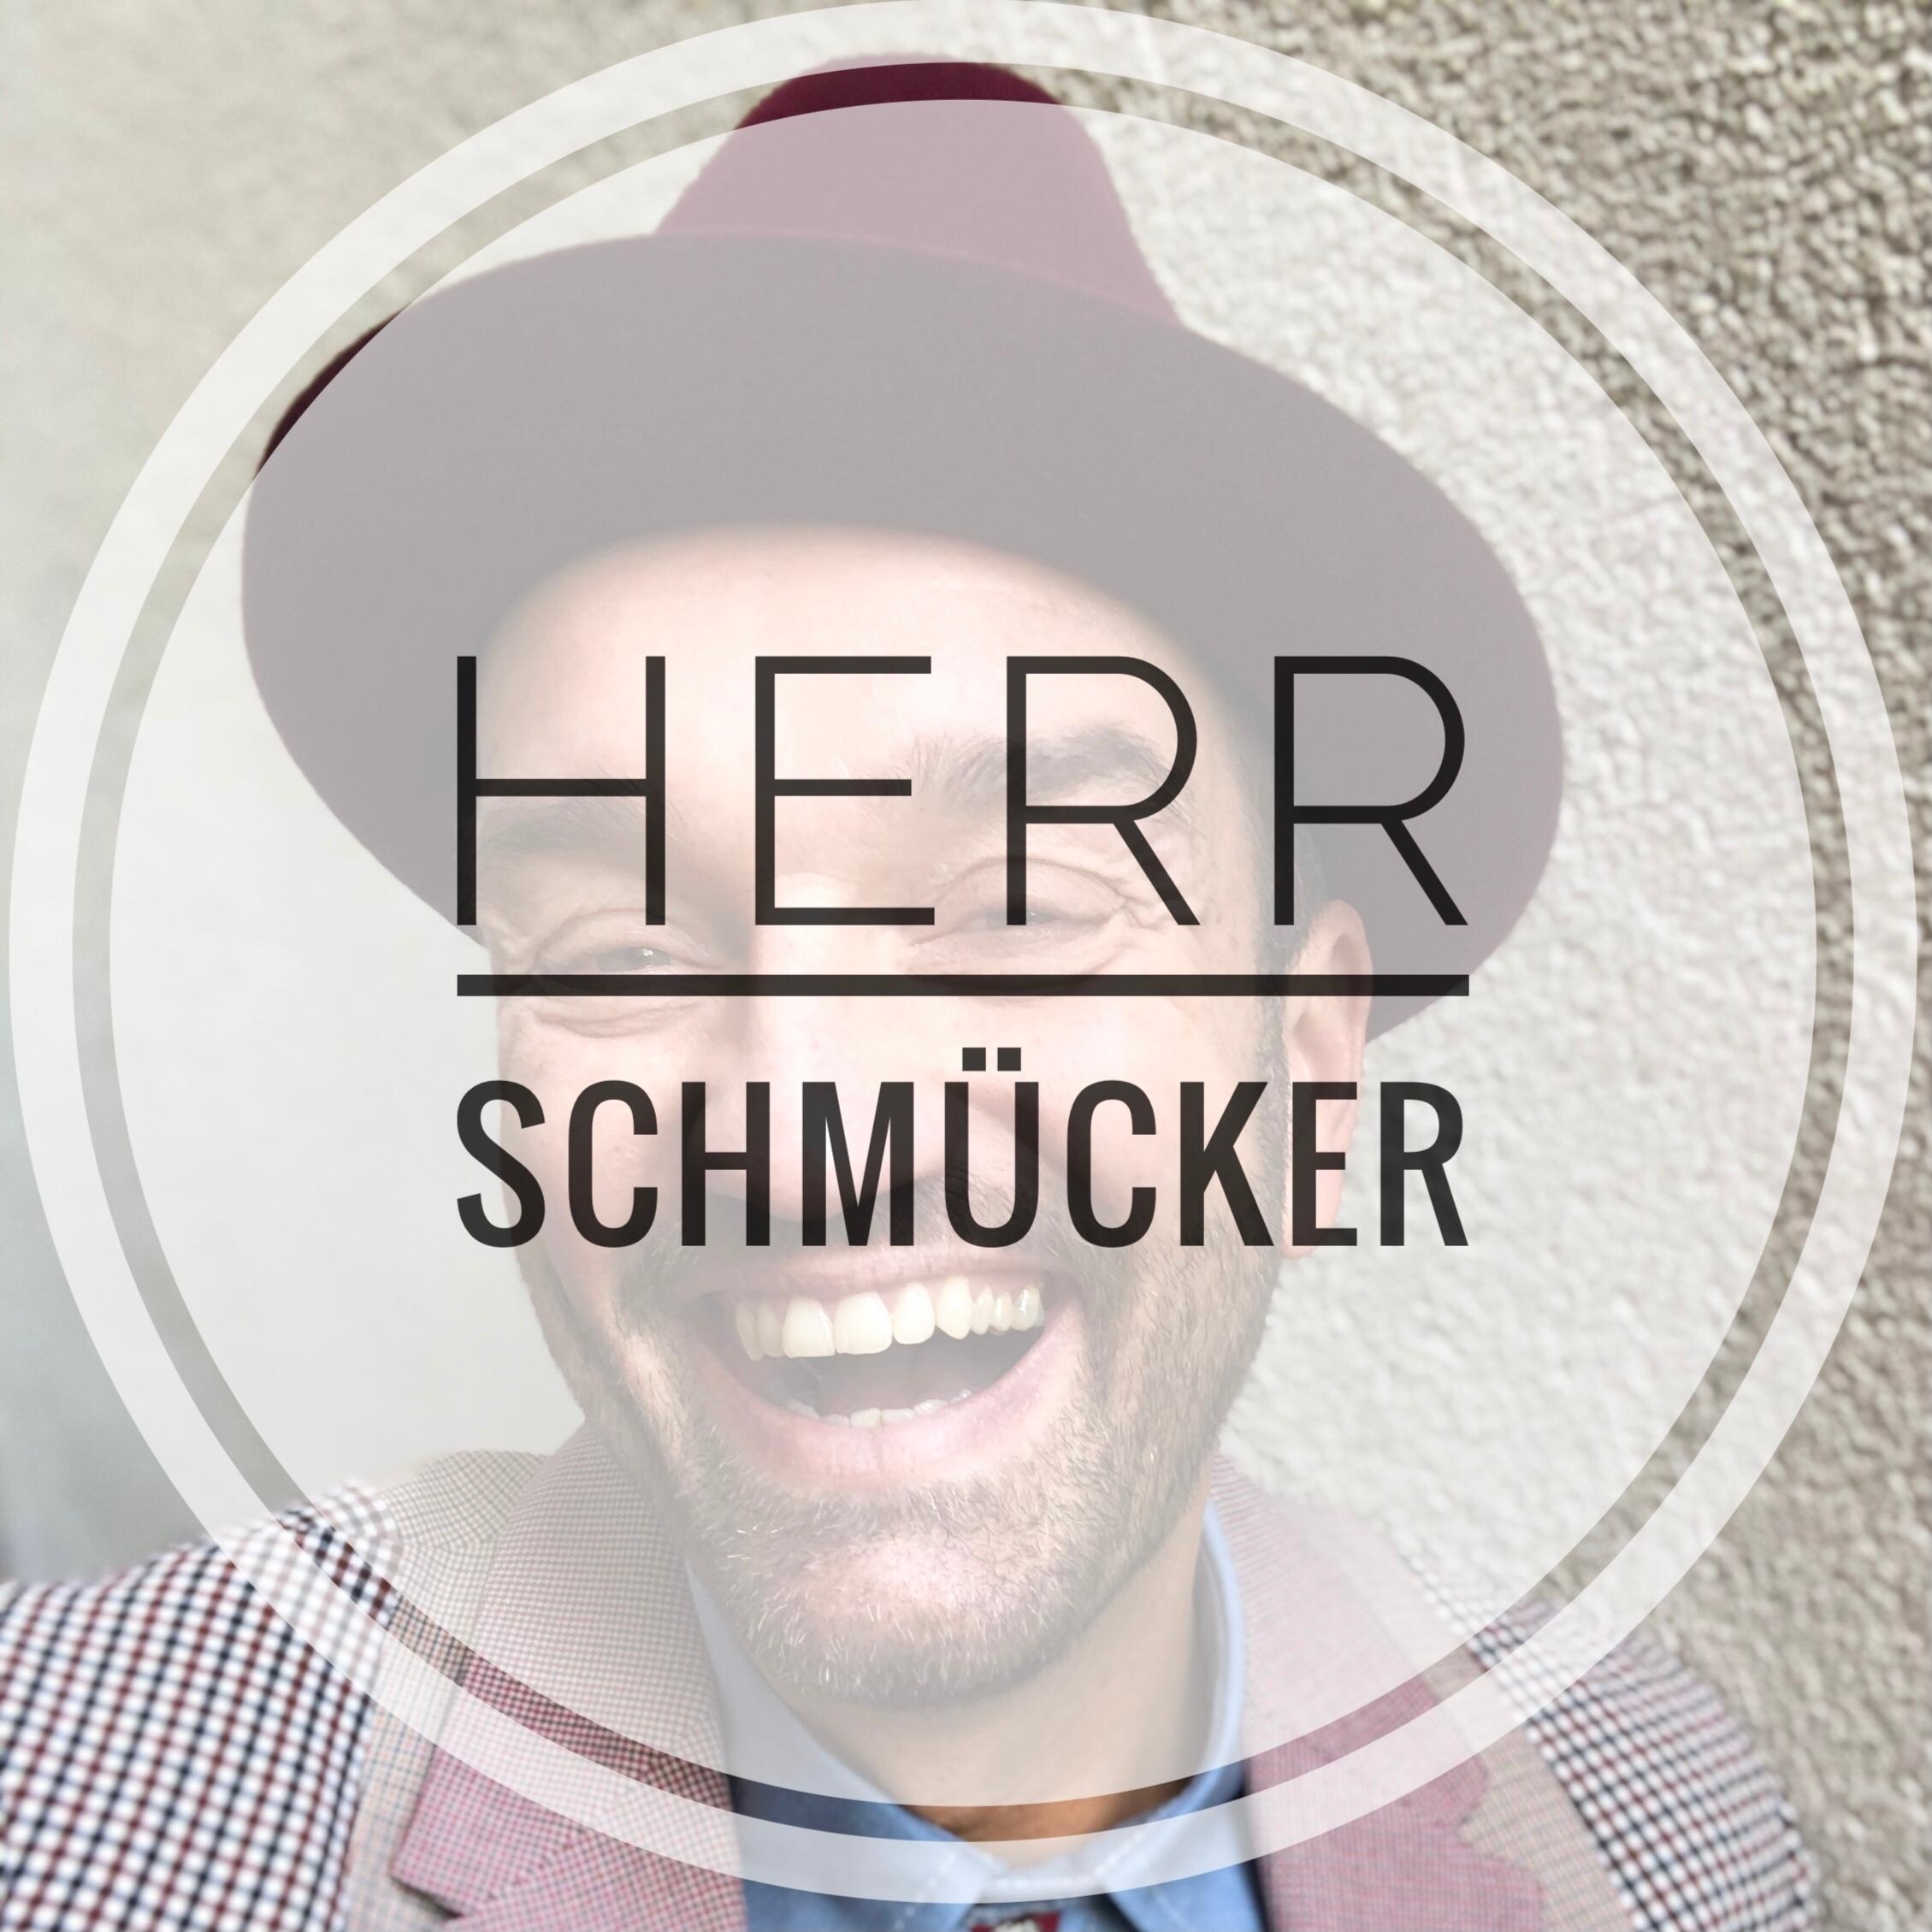 Hallo! Folgt meinenm neuen Homestyling Profil auf Intagram: herr.schmuecker
#homestyle #homestyling #dekoideen #deko